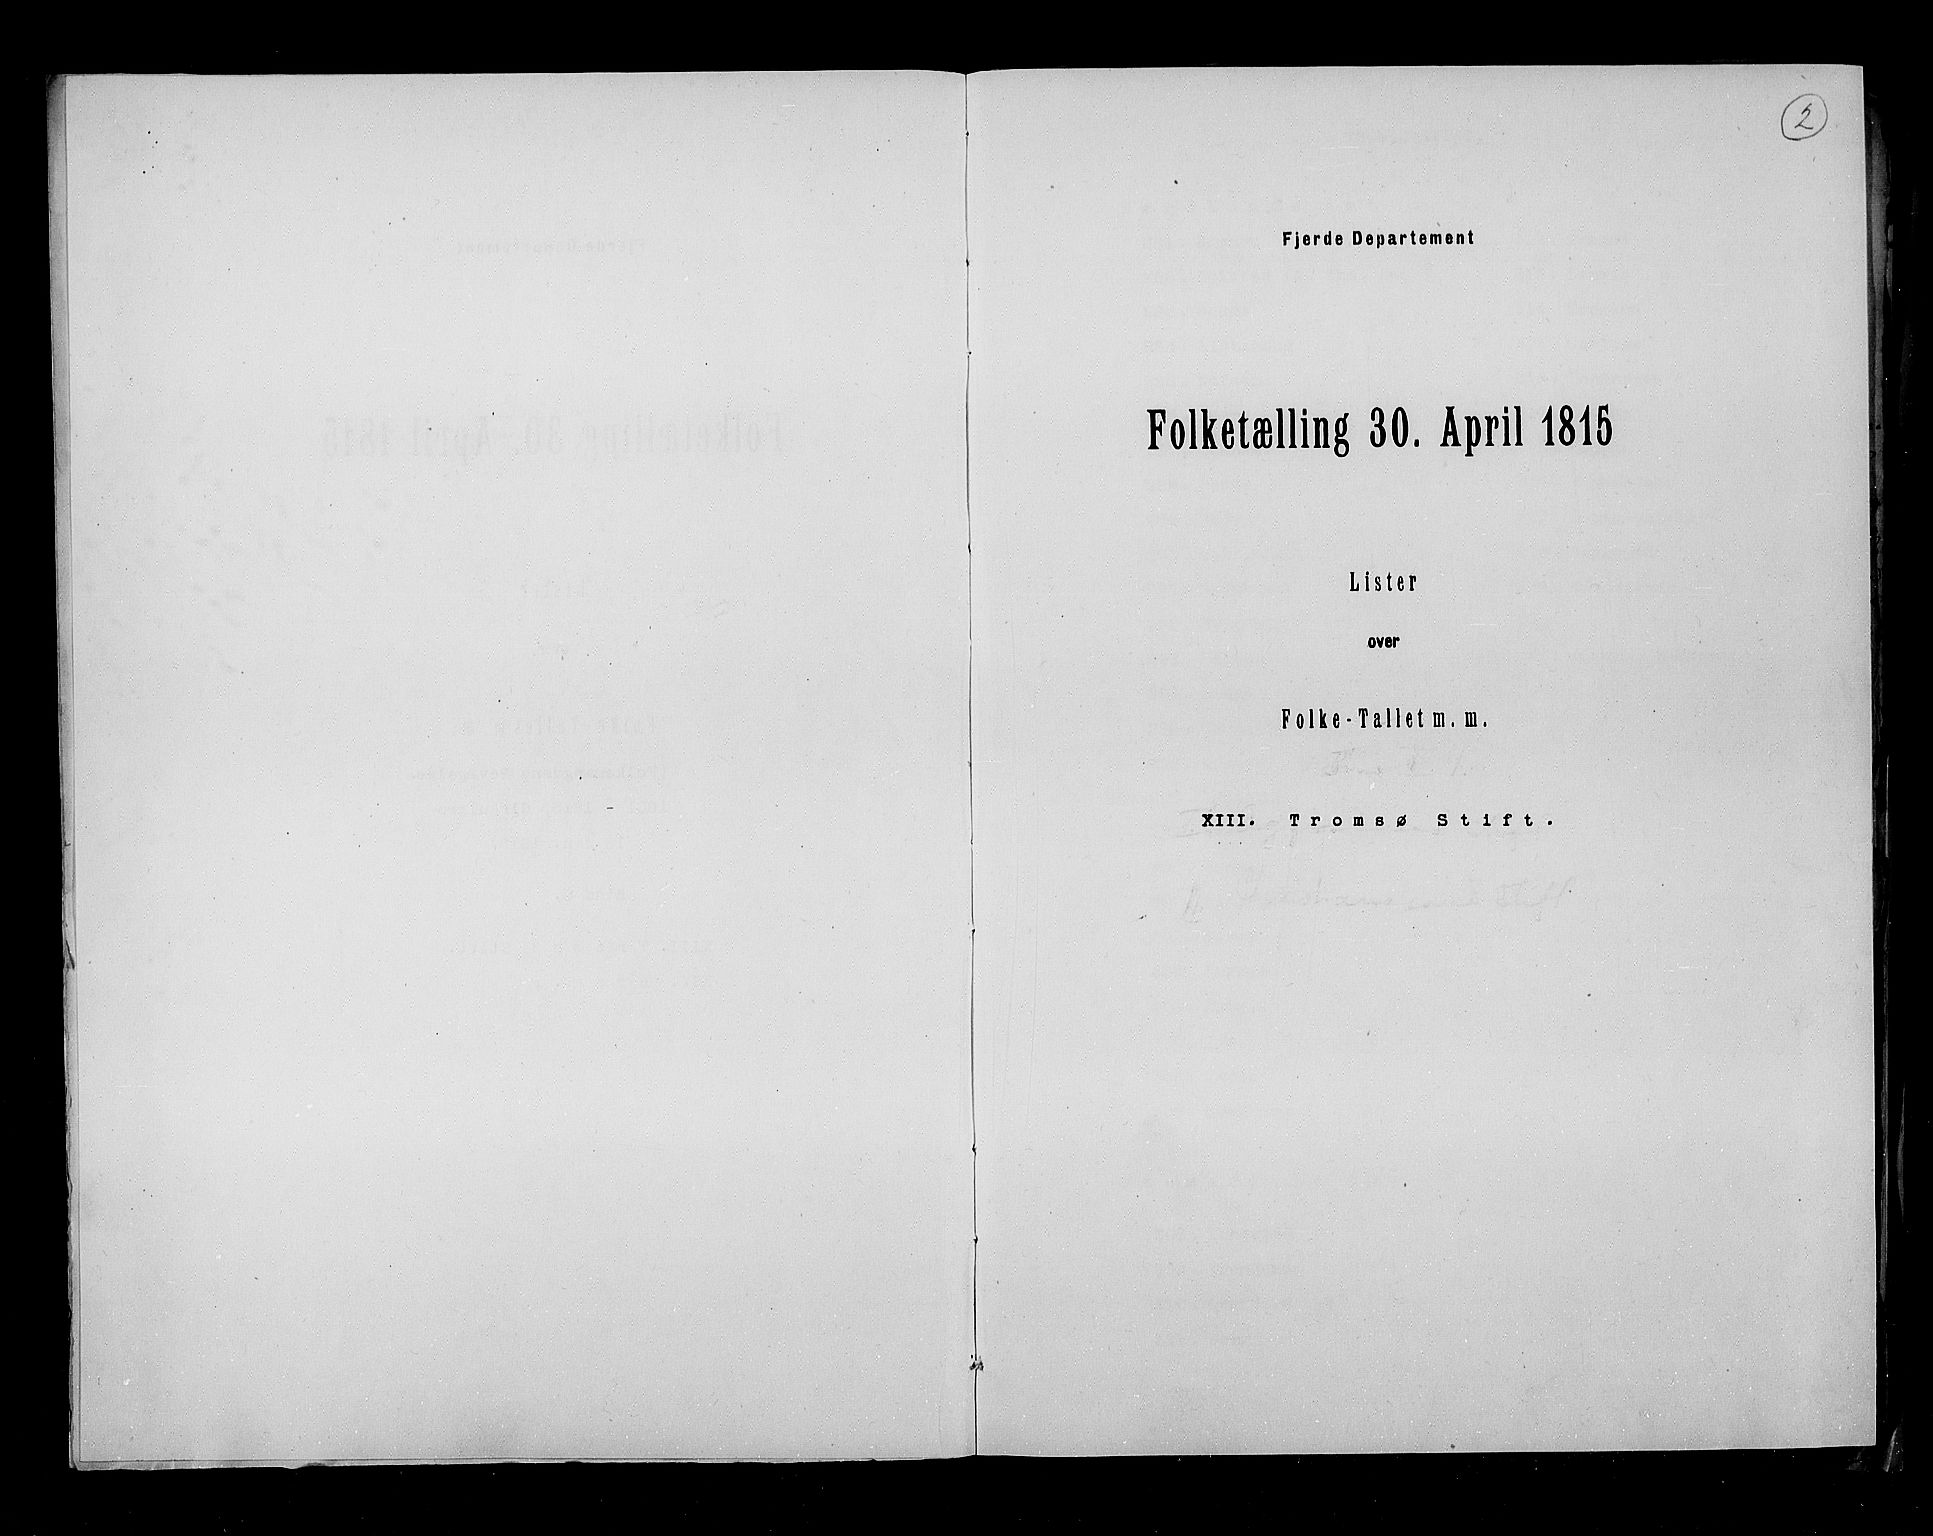 RA, Folketellingen 1815, bind 8: Folkemengdens bevegelse i Tromsø stift og byene, 1815, s. 2